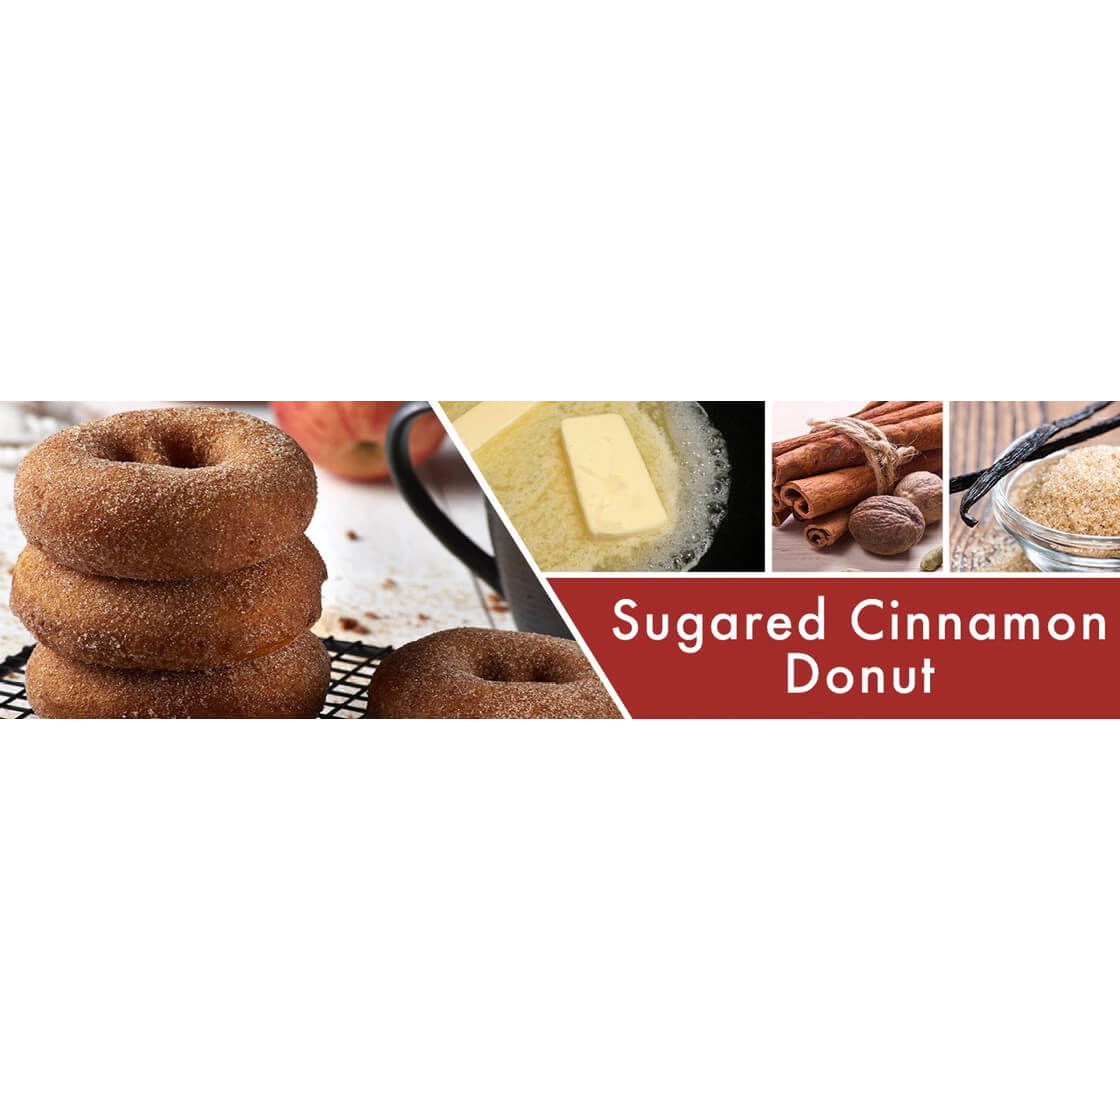 Sugared Cinnamon Donut 680g